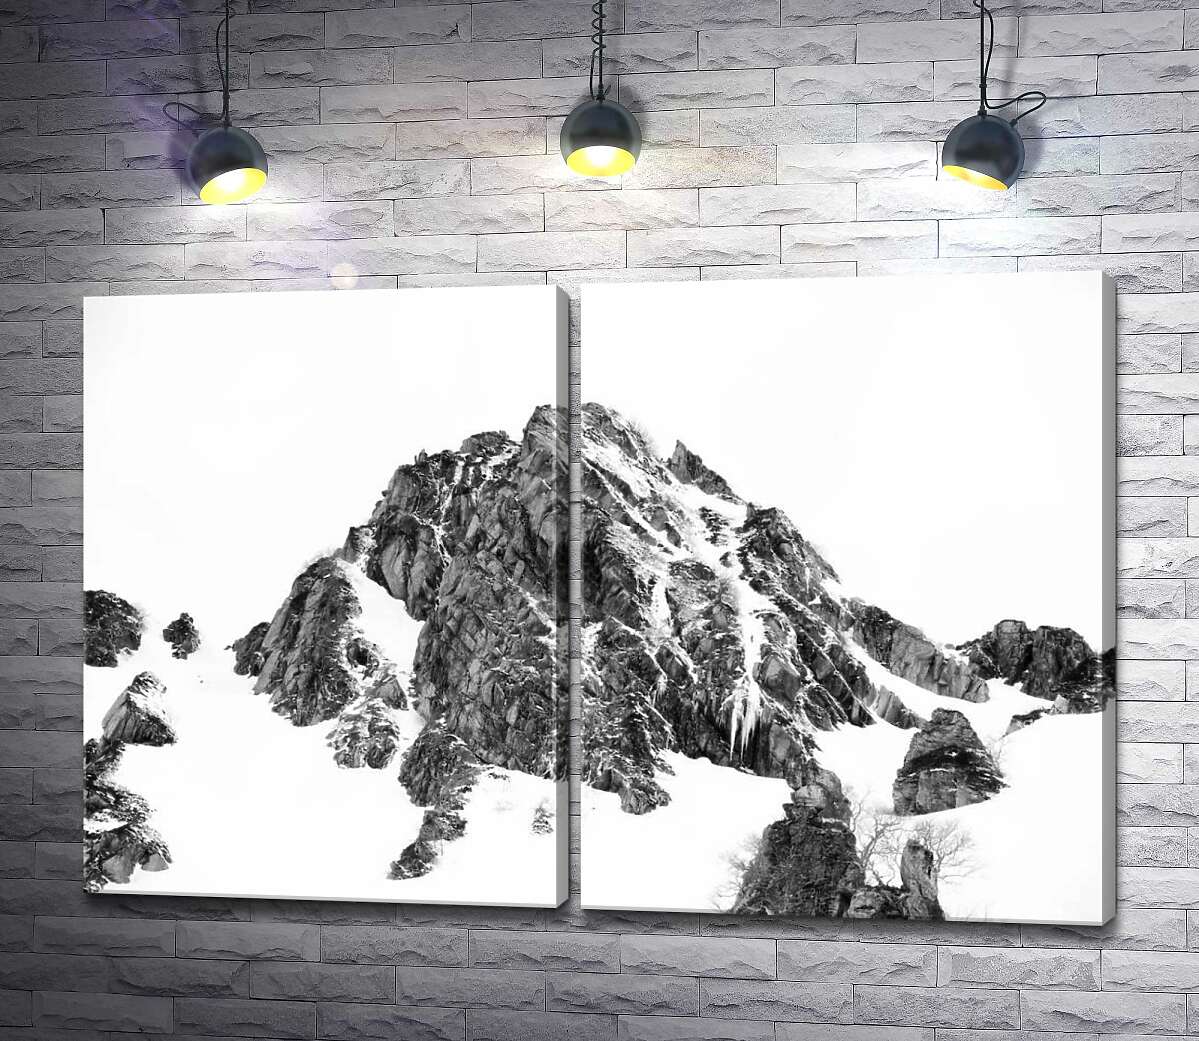 модульная картина Заснеженые камни вершины горы Монблан (Mont Blanc)